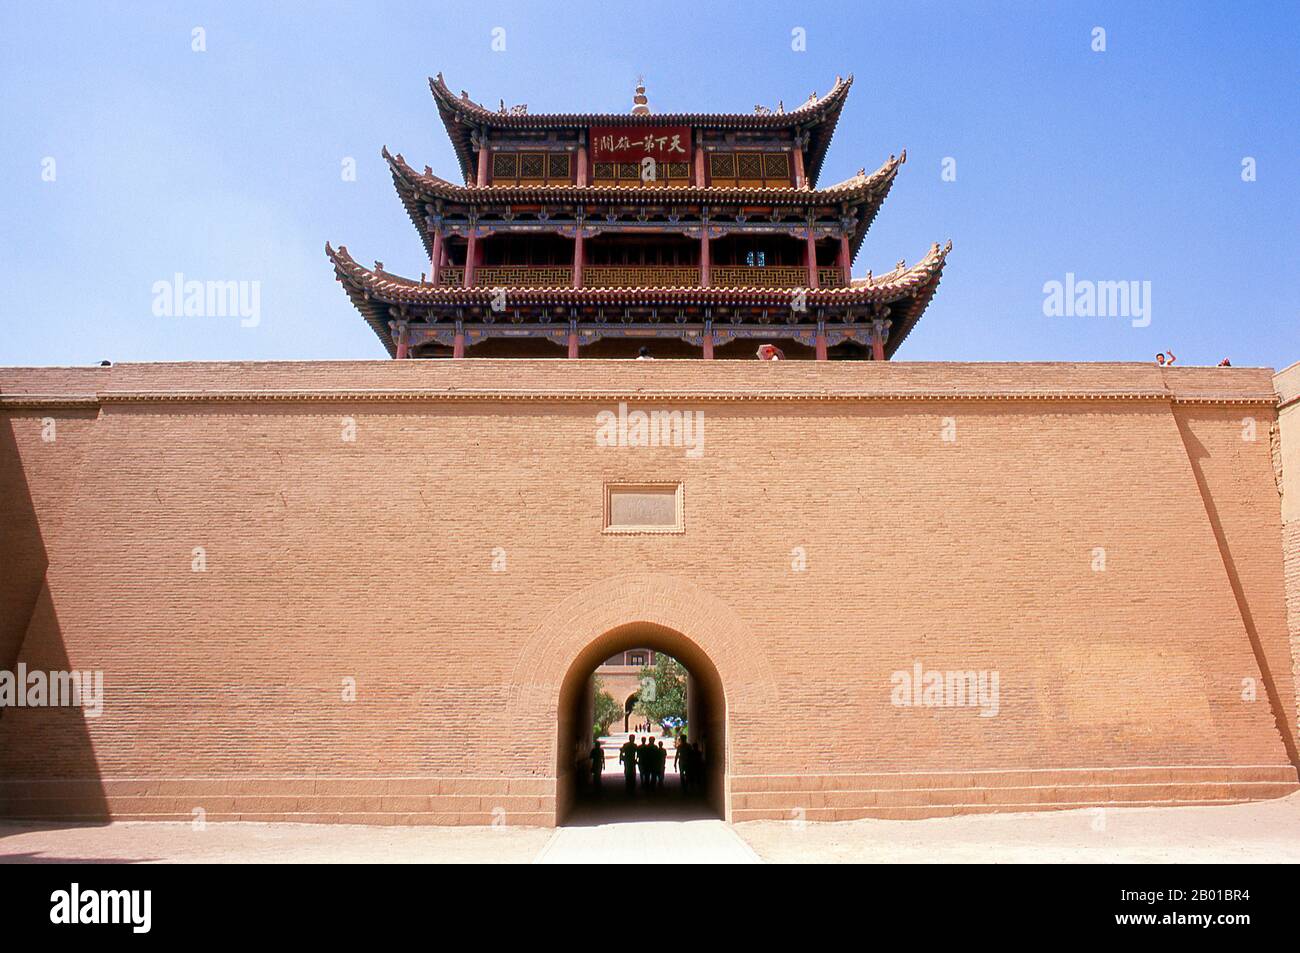 Cina: Guanghua Men (porta dell'illuminazione), Jiayuguan Fort, Jiayuguan, Gansu. Jiayuguan, il “primo e più grande passo sotto il cielo”, fu completato nel 1372 su ordine di Zhu Yuanzhang, il primo imperatore Ming (1368-98), per segnare la fine della Grande Muraglia Ming. Era anche il limite stesso della civiltà cinese, e gli inizi delle terre “barbariche” esterne. Per secoli il forte non era solo di importanza strategica per i cinesi Han, ma anche di significato culturale. Questo era l'ultimo luogo civilizzato prima delle tenebre esterne, e quelli che procedono oltre affrontarono una vita di esilio. Foto Stock